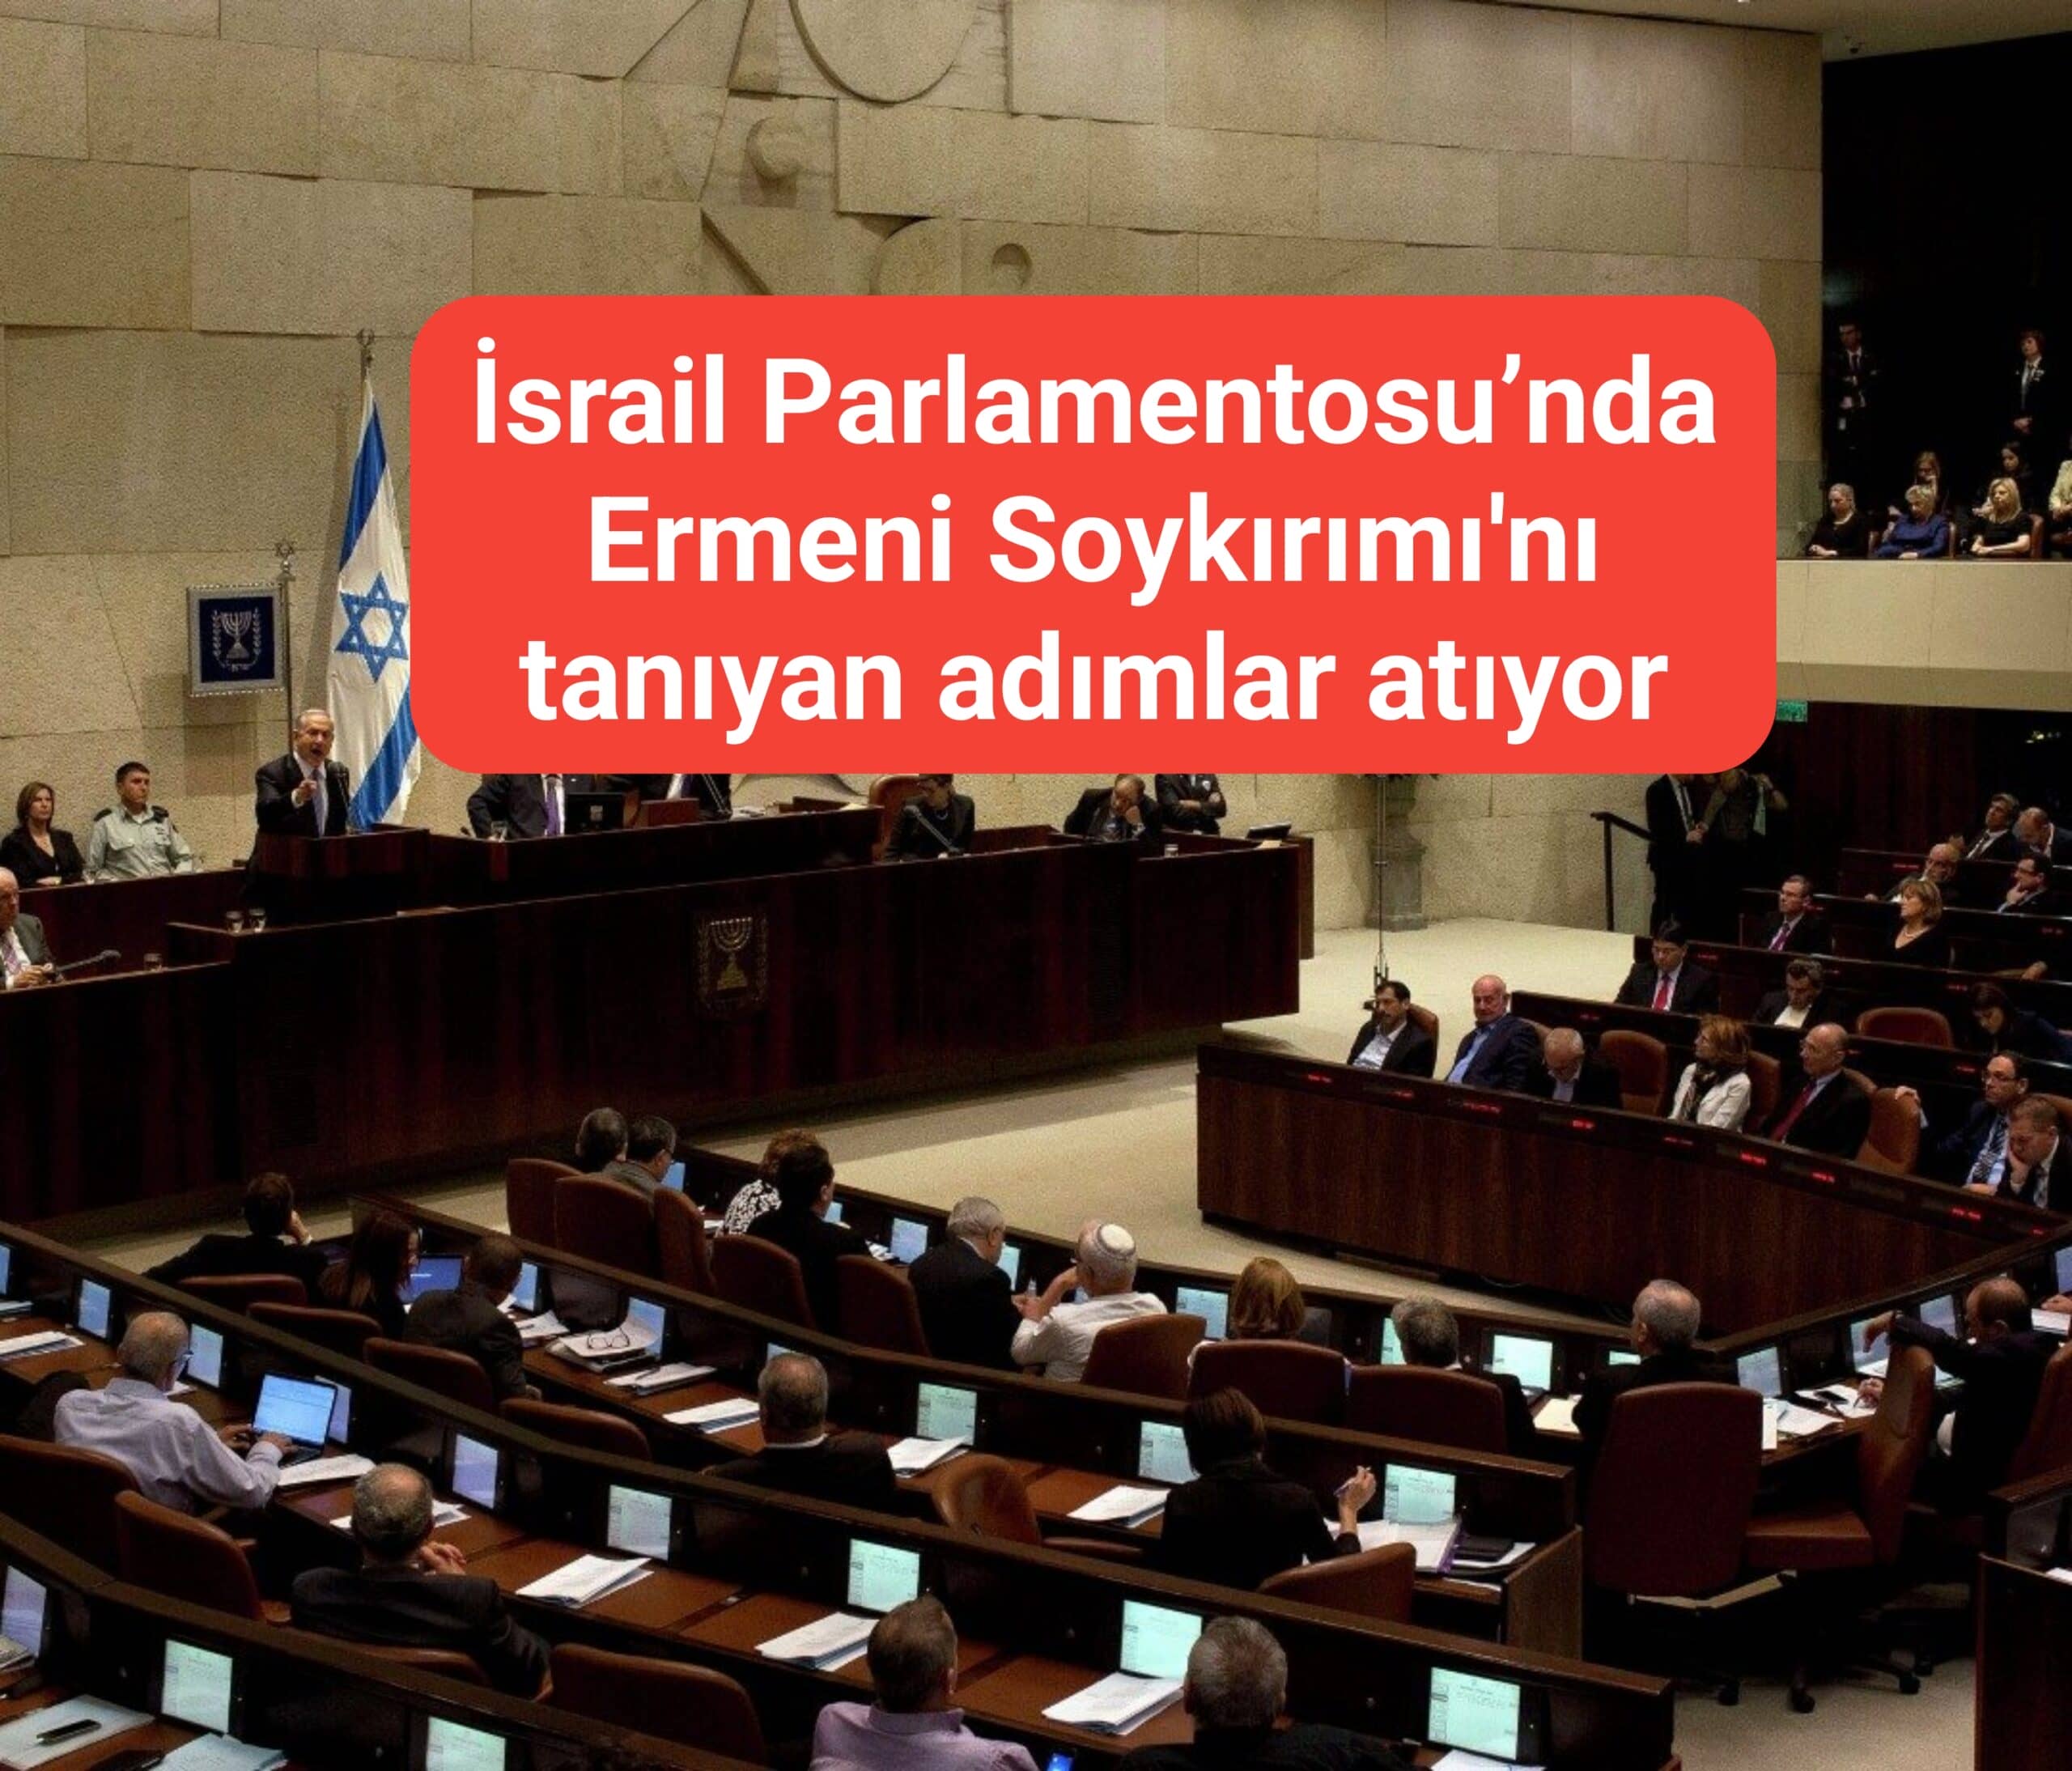 İsrail Parlamentosu’nda Ermeni Soykırımı'nı tanıyan adımlar atıyor